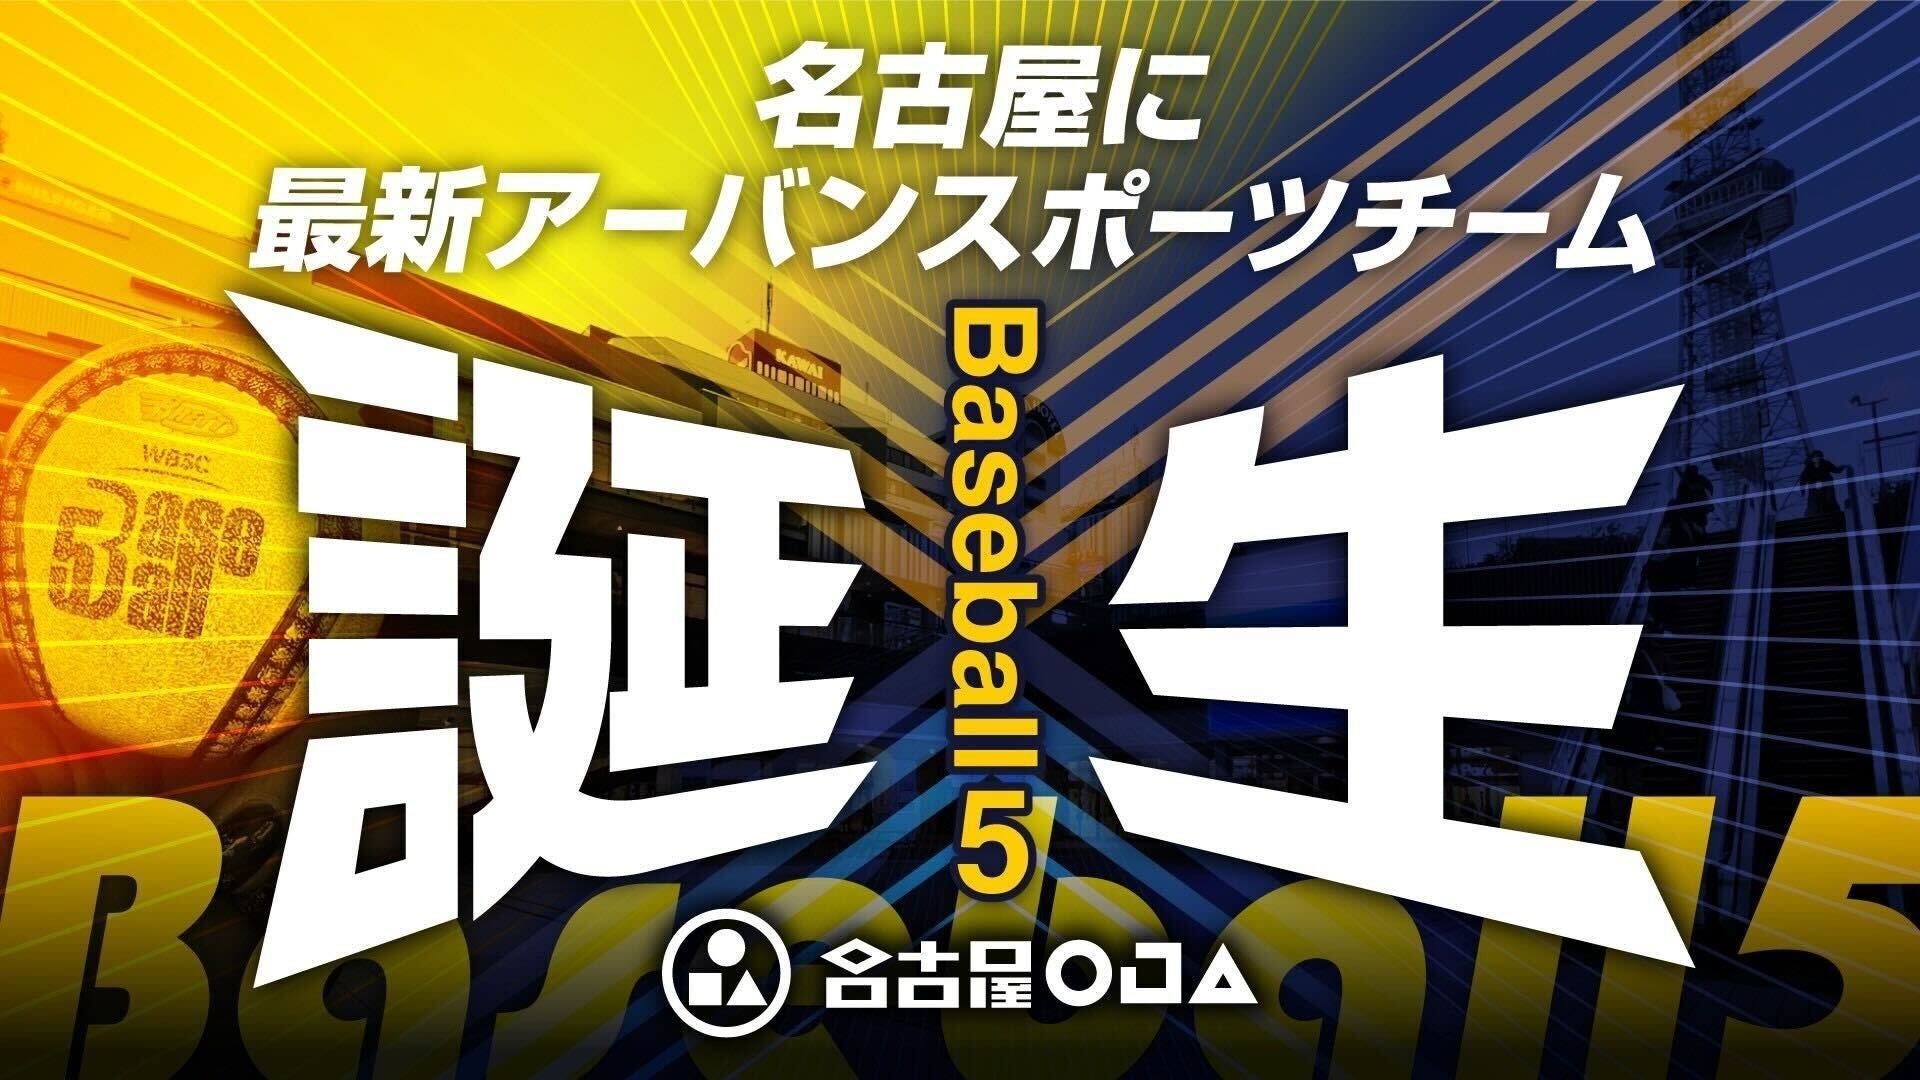 名古屋に 大注目の最新アーバンスポーツ 「Baseball５」 の本格チーム誕生～選手メンバー募集～